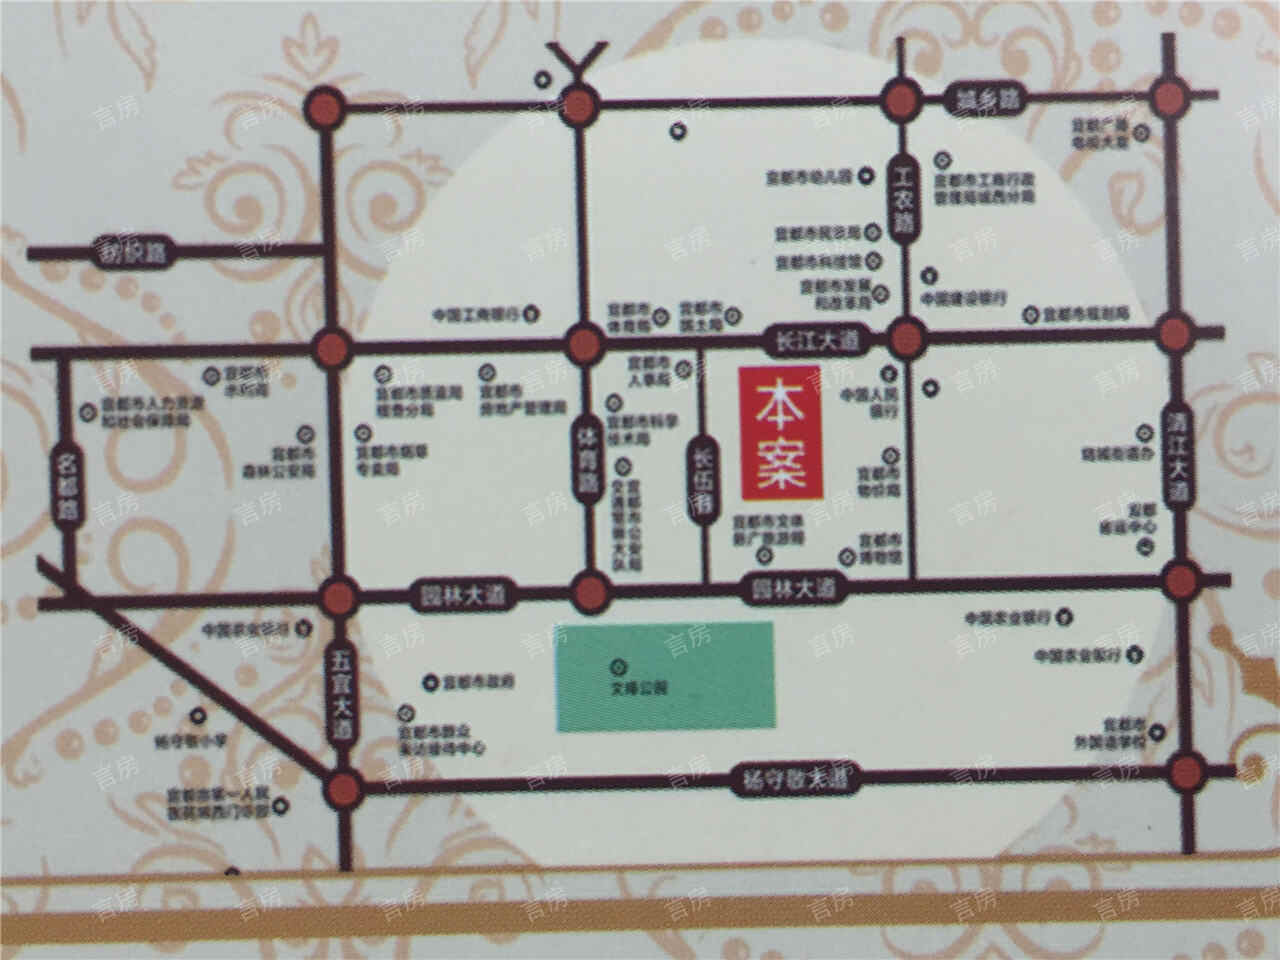 嘉木醇文化广场位置图